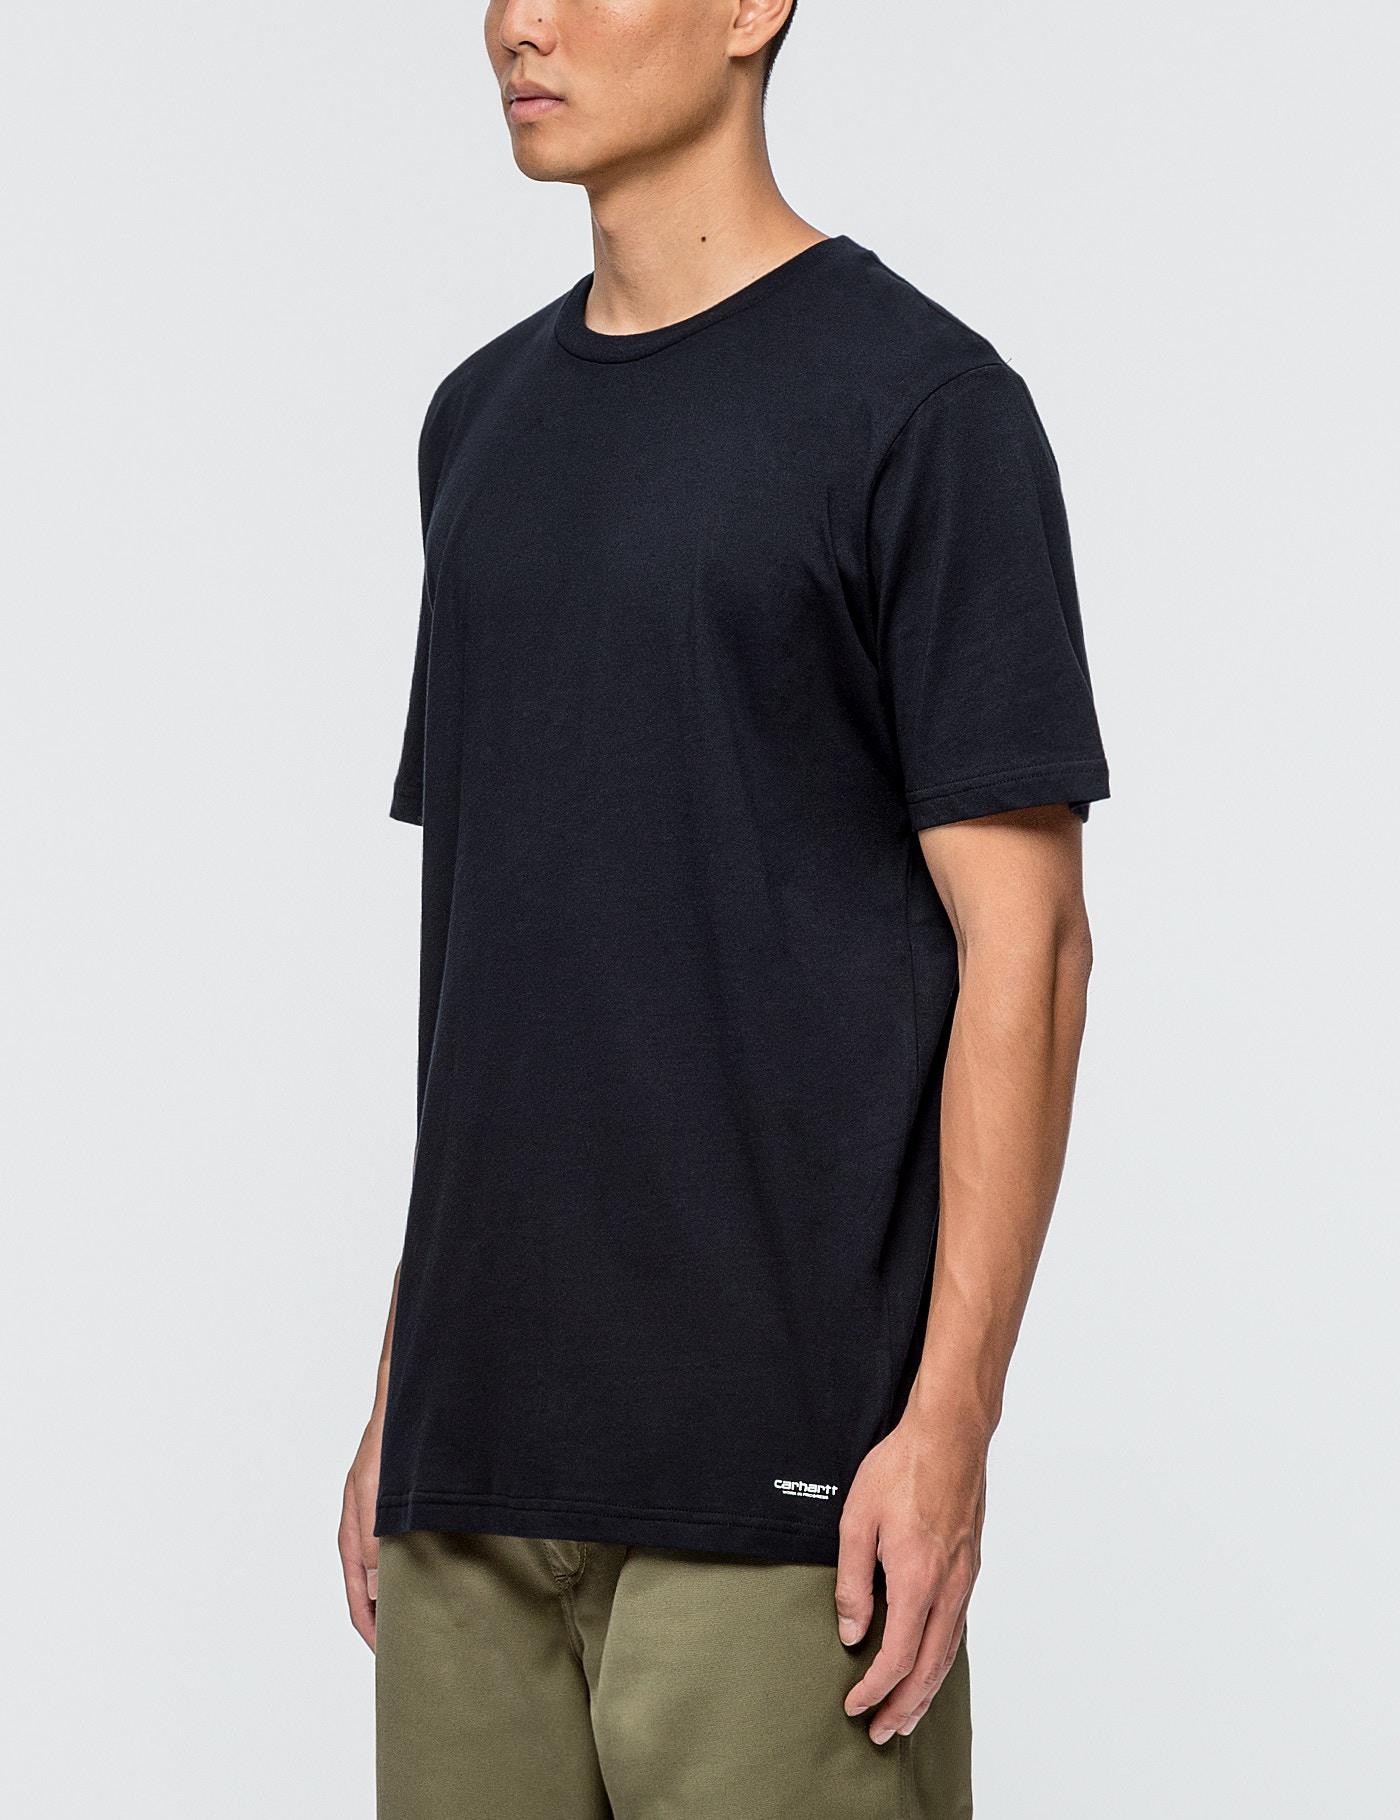 Carhartt WIP Cotton Standard Crew Neck T-shirt in White/Dark Navy (White)  for Men - Lyst